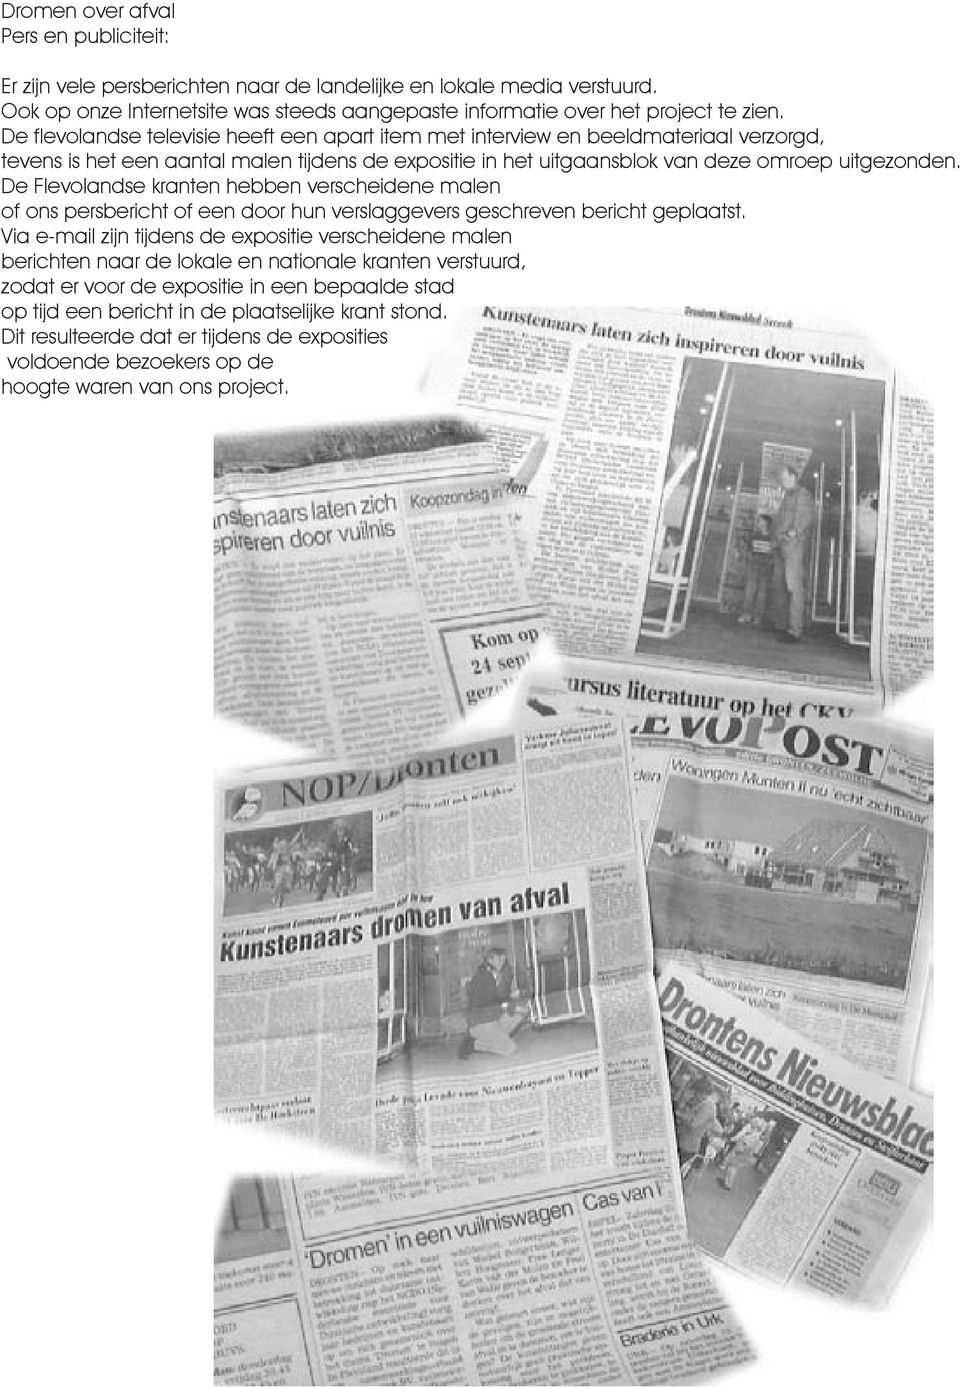 De Flevolandse kranten hebben verscheidene malen of ons persbericht of een door hun verslaggevers geschreven bericht geplaatst.